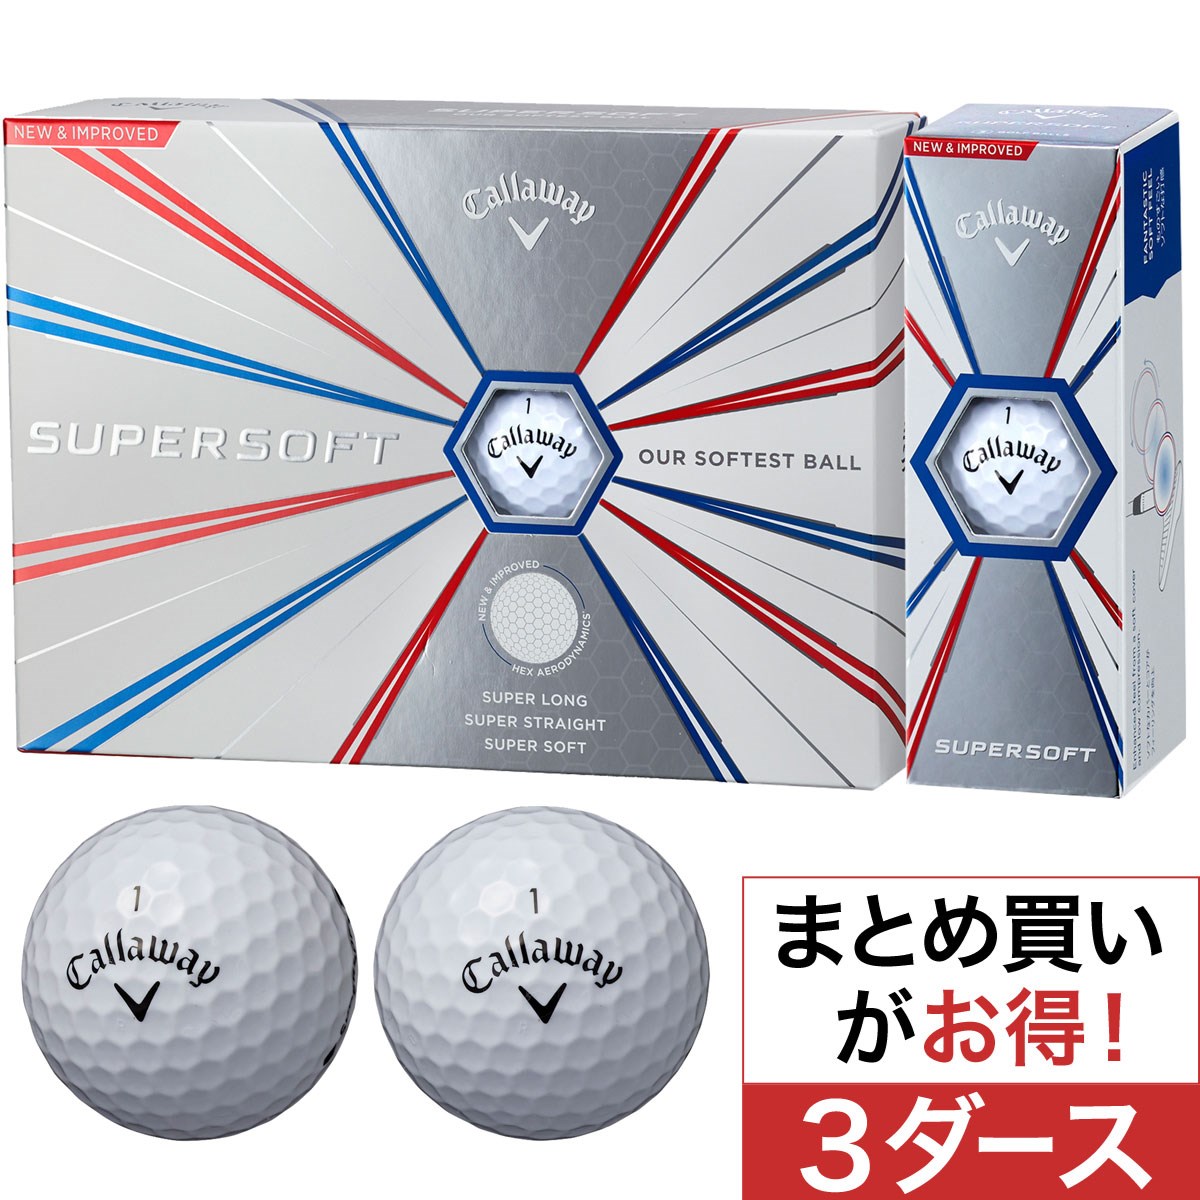 キャロウェイゴルフ(Callaway Golf) SUPERSOFT 19 ボール 3ダースセット 